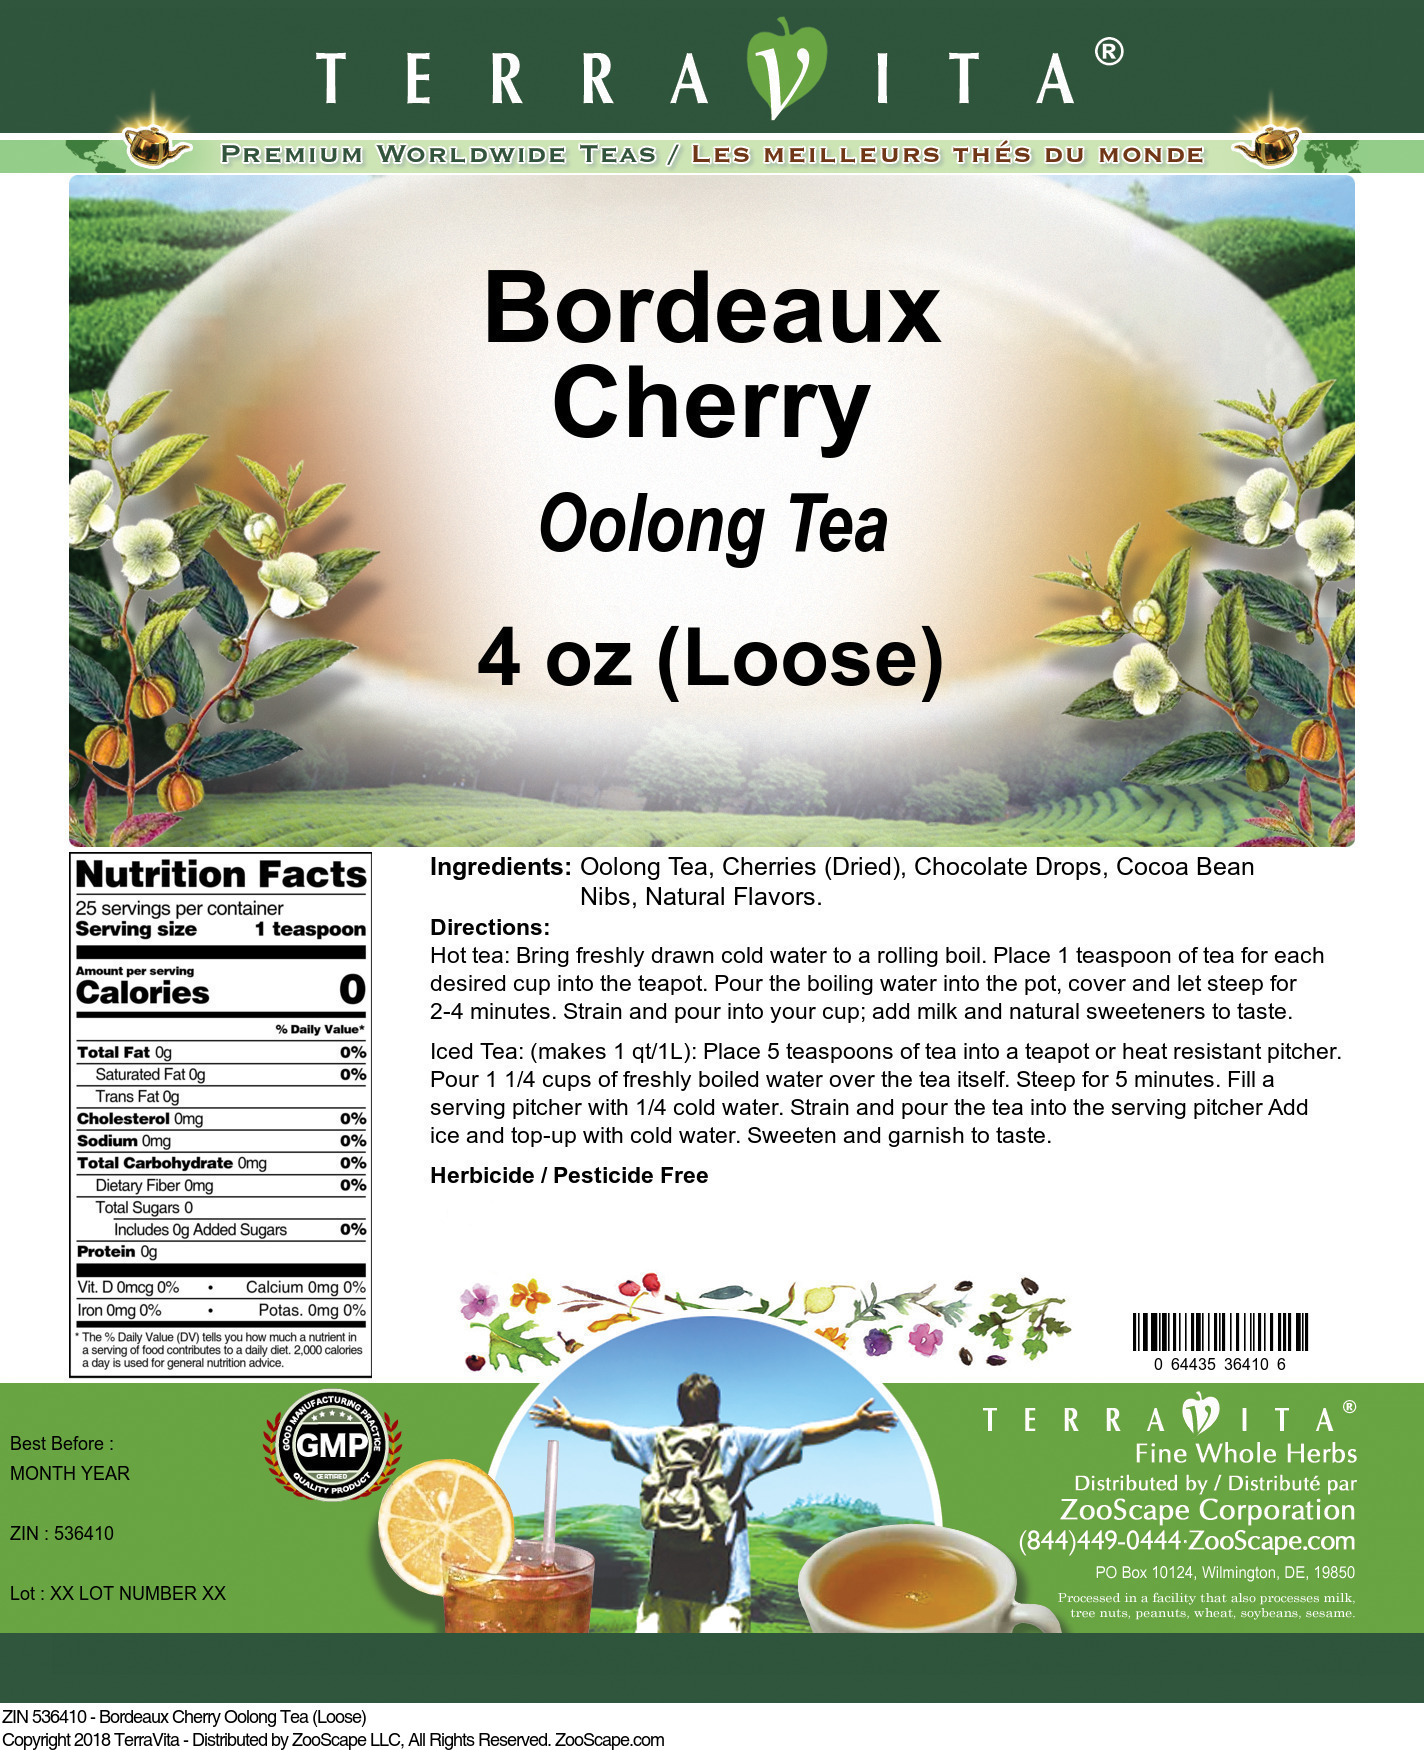 Bordeaux Cherry Oolong Tea (Loose) - Label